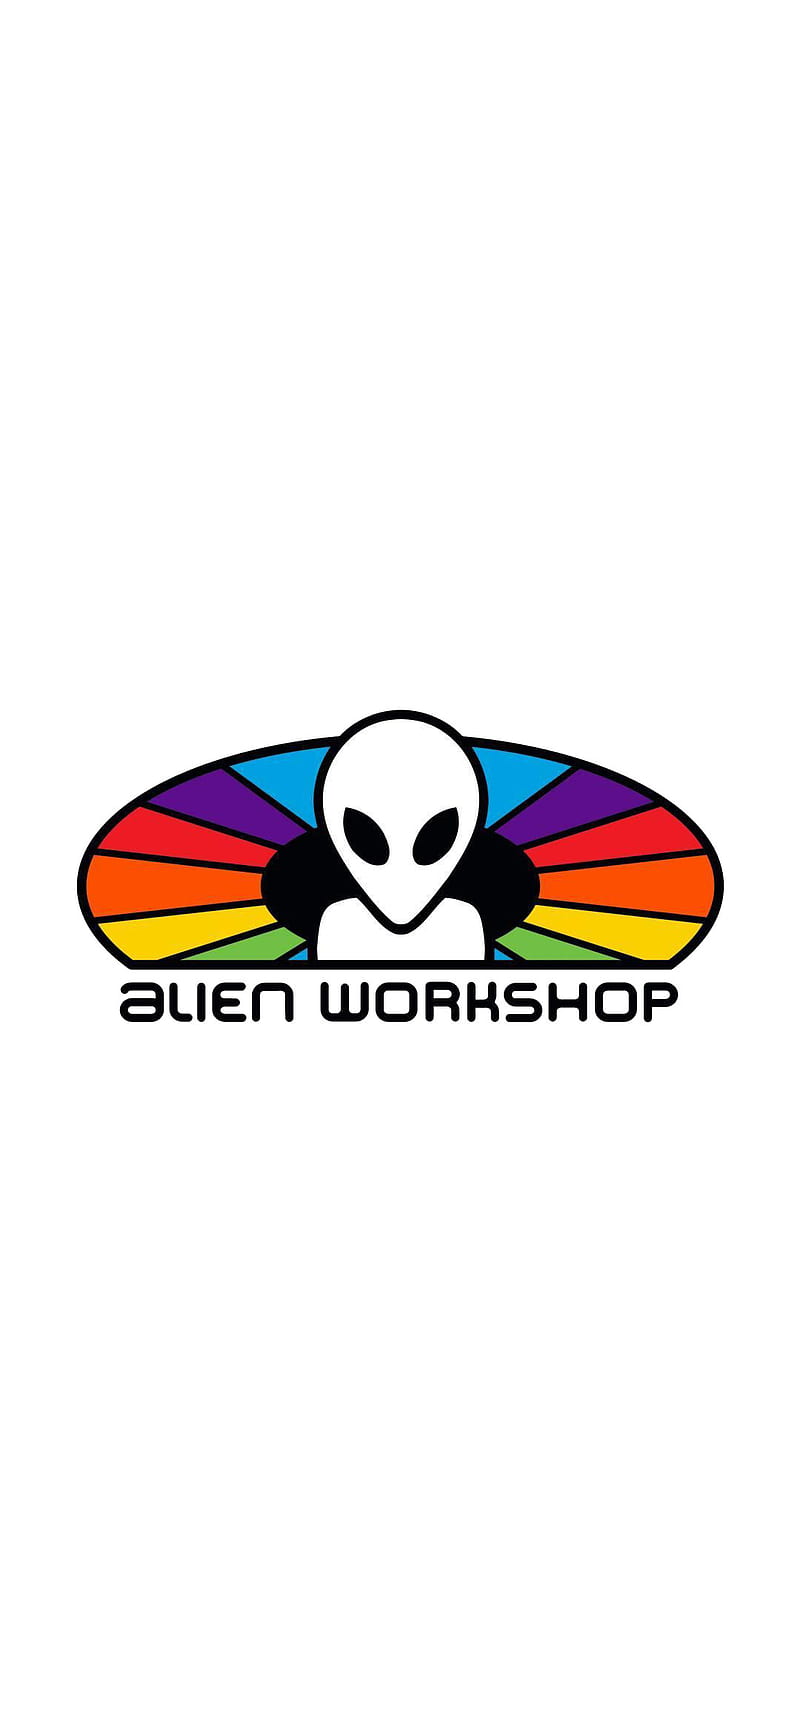 Alien Workshop, alien, logo, skate, skateboard, skateboards, sport, thps, tony hawks, workshop, HD phone wallpaper